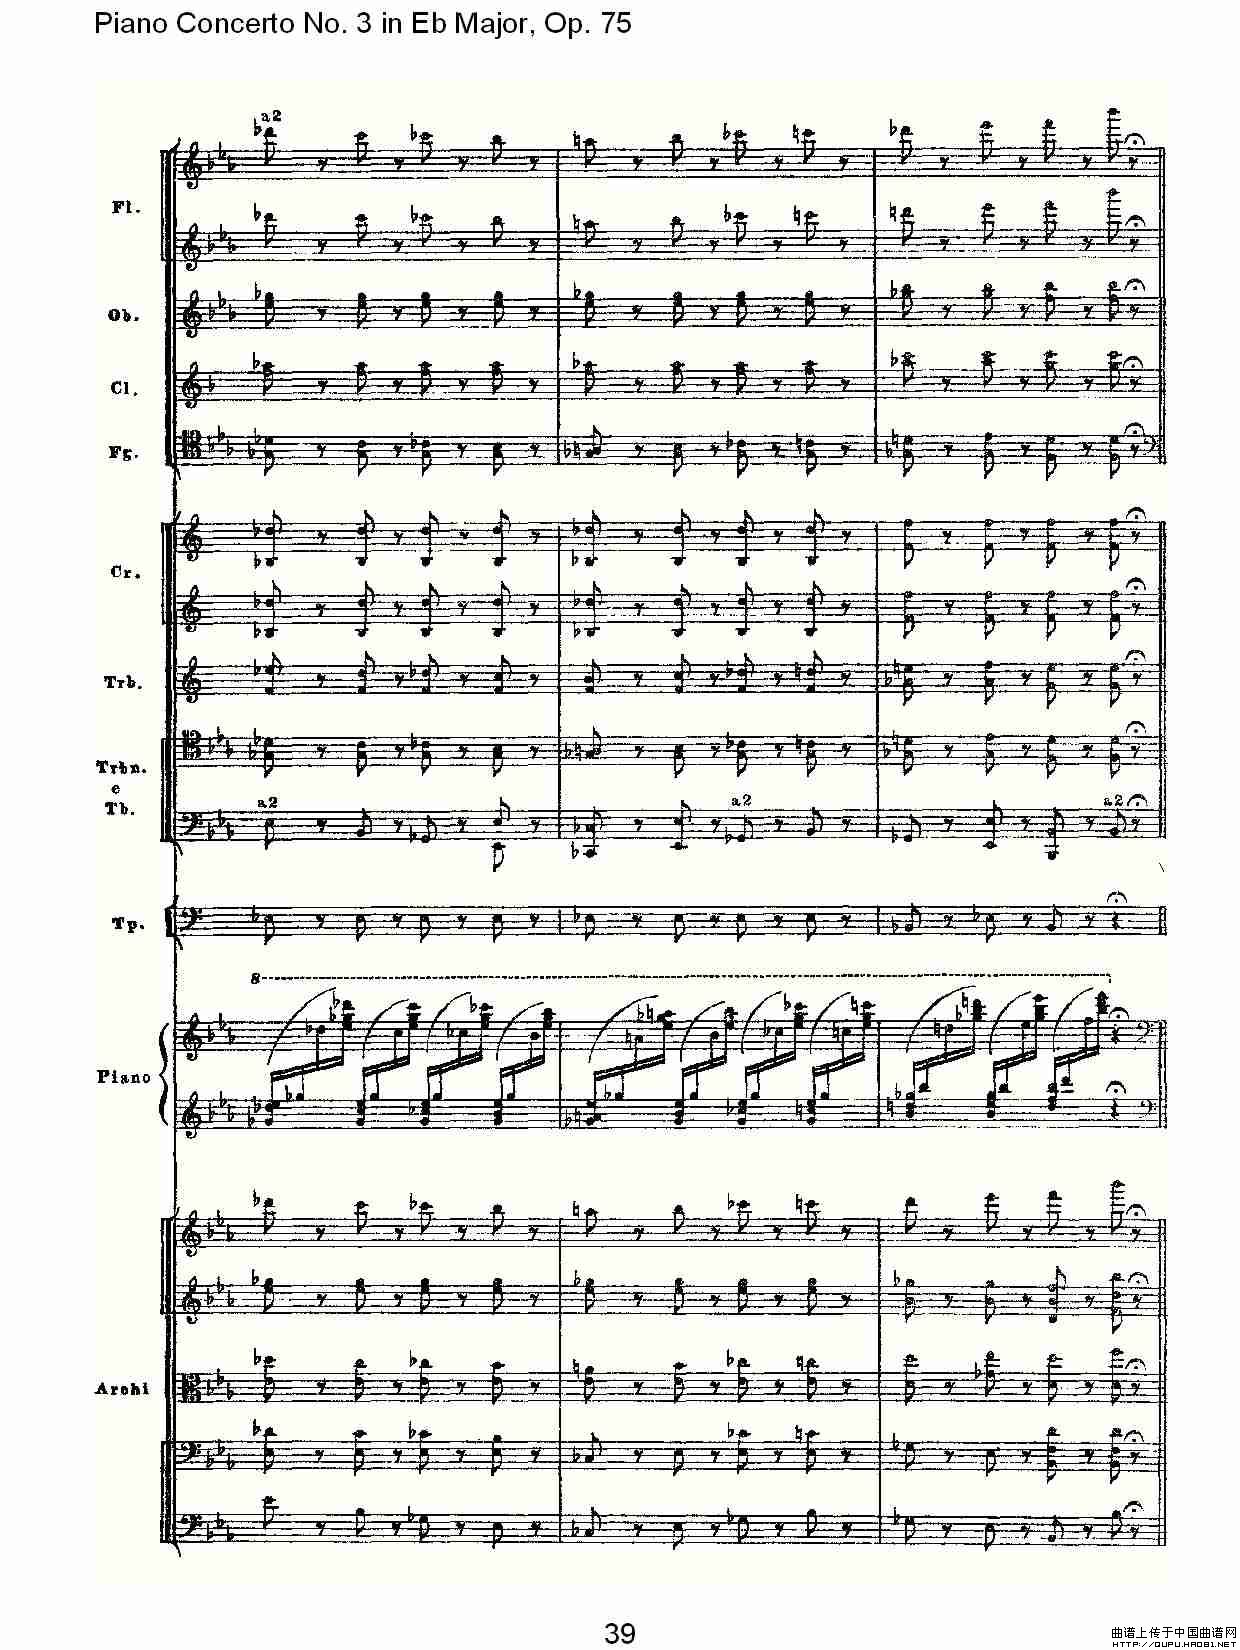 Piano Concerto No.3 in Eb Major, Op.75（Eb大调第三钢琴协奏）(1)_原文件名：Piano Concerto No.3 in Eb Major, Op.759.jpg